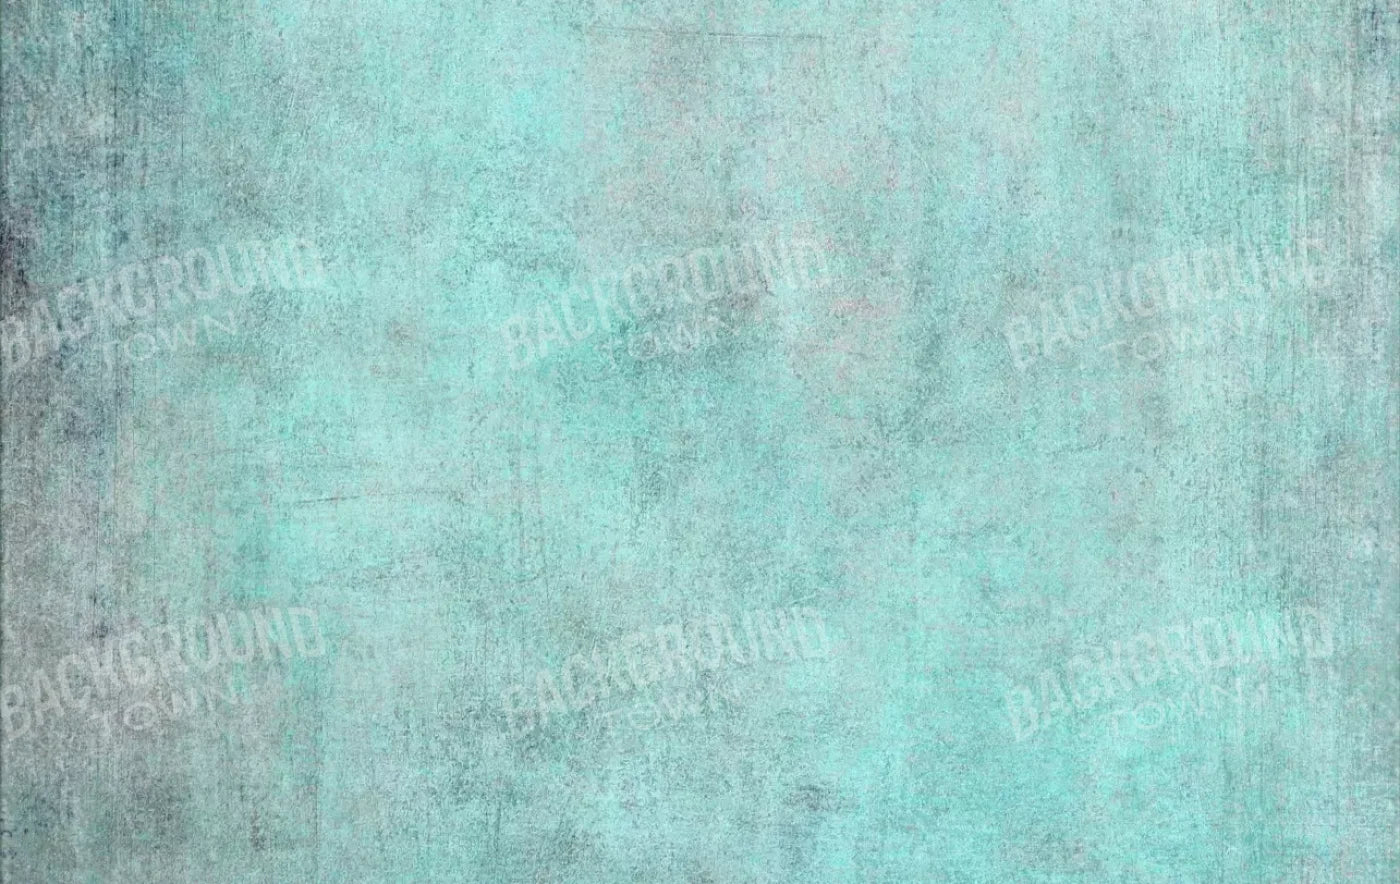 Grunge Seafoam 16X10 Ultracloth ( 192 X 120 Inch ) Backdrop